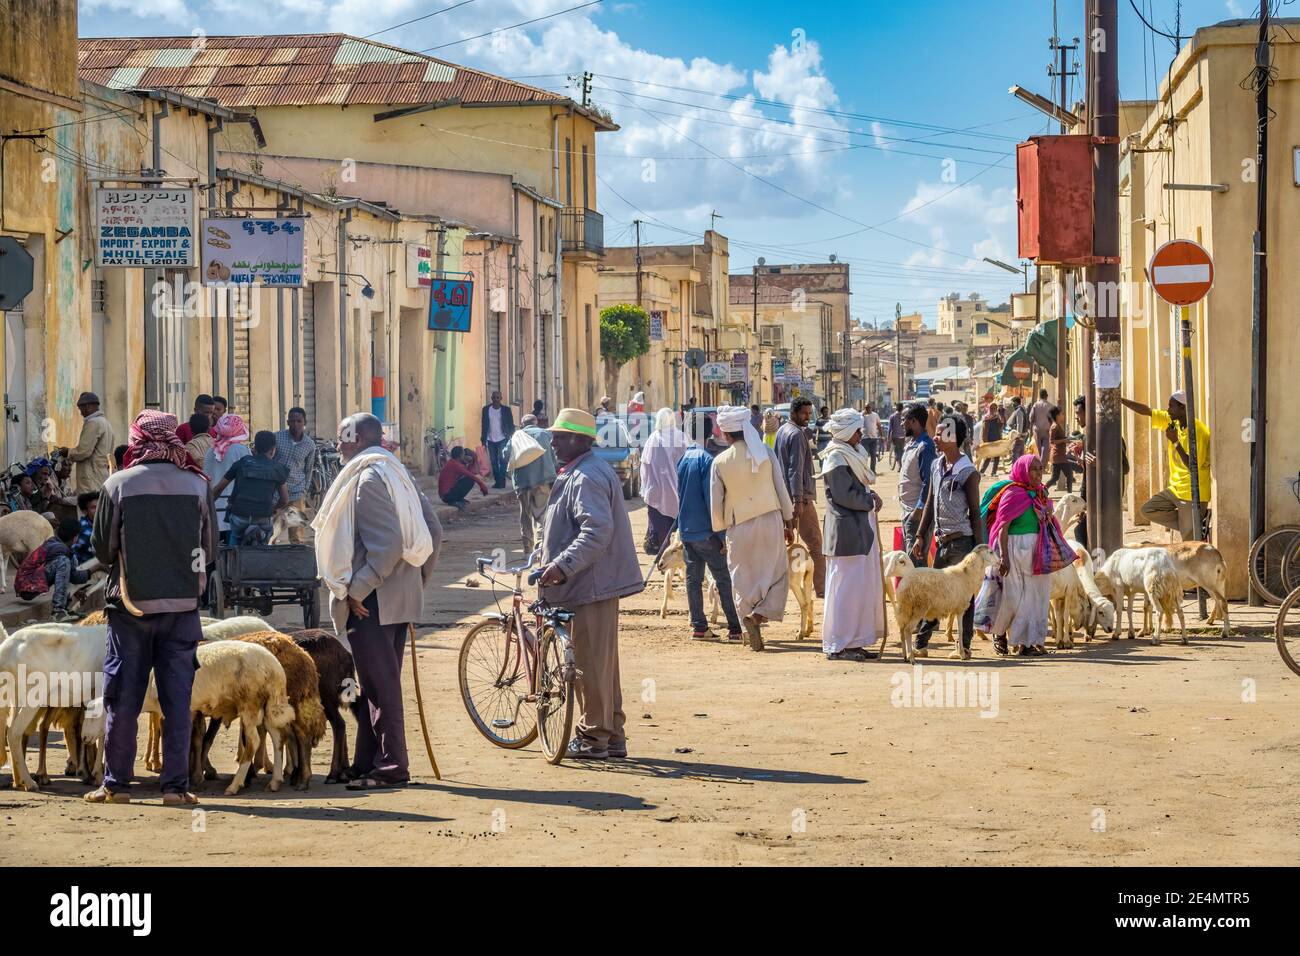 La gente socializa en el mercado en el centro de Asmara Eritrea. Foto de stock